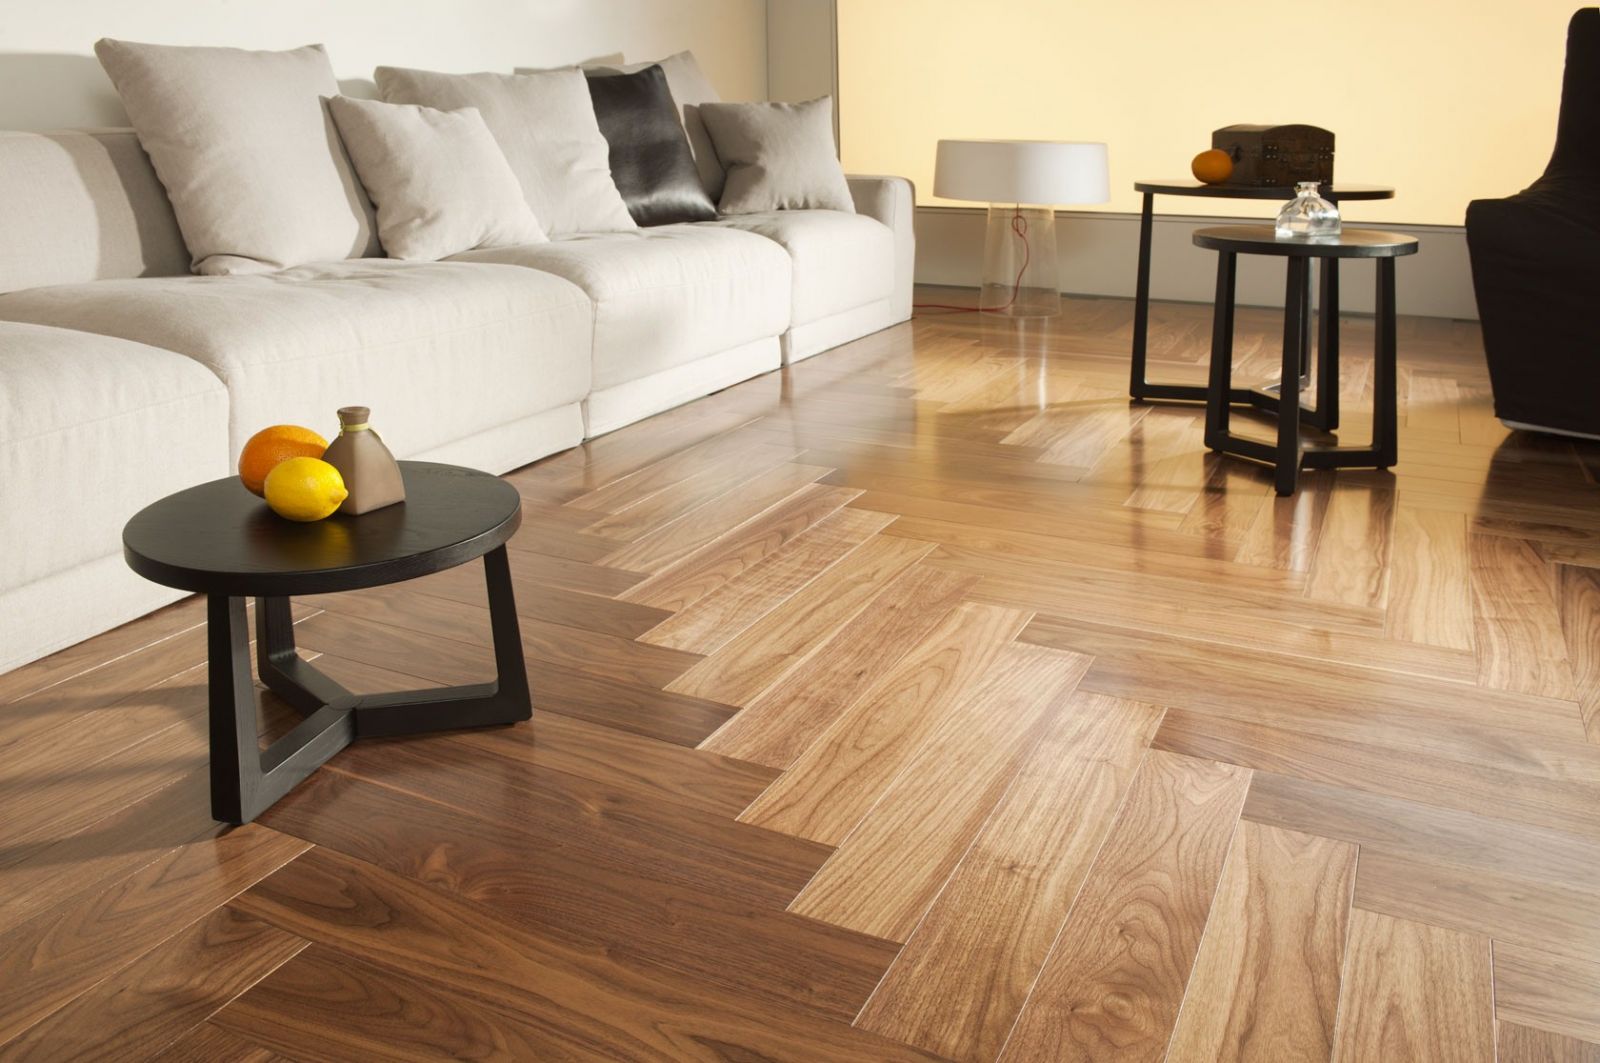 Phong thủy sàn gỗ - Yếu tố không thể bỏ qua trong thiết kế nhà